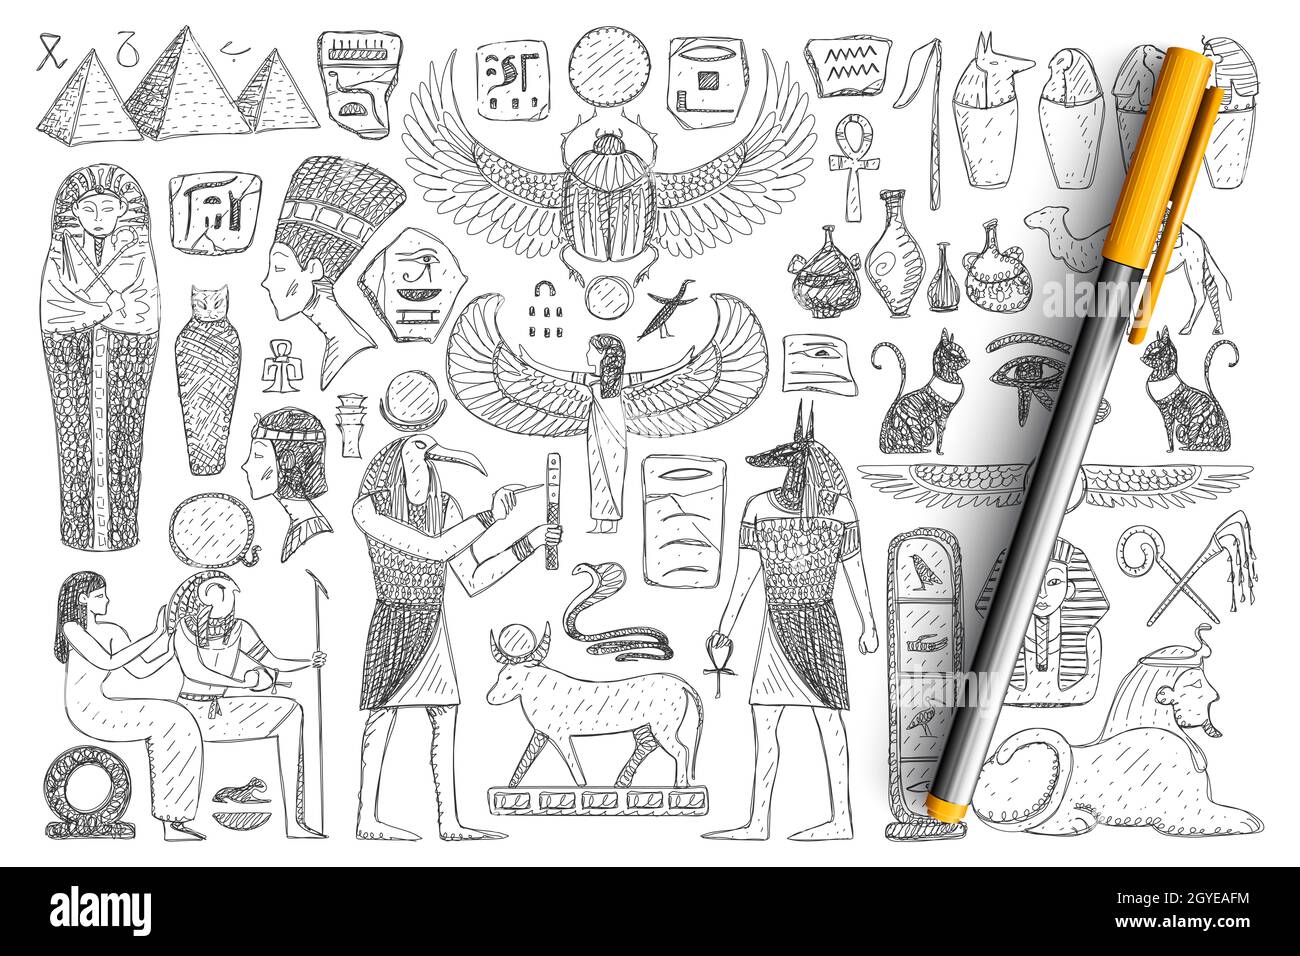 Alte ägyptische Symbole Doodle Set. Sammlung von handgezeichneten Pyramiden, pharao, Priester, religiöse Zeichen und heilige Symbole isoliert auf Transpare Stockfoto